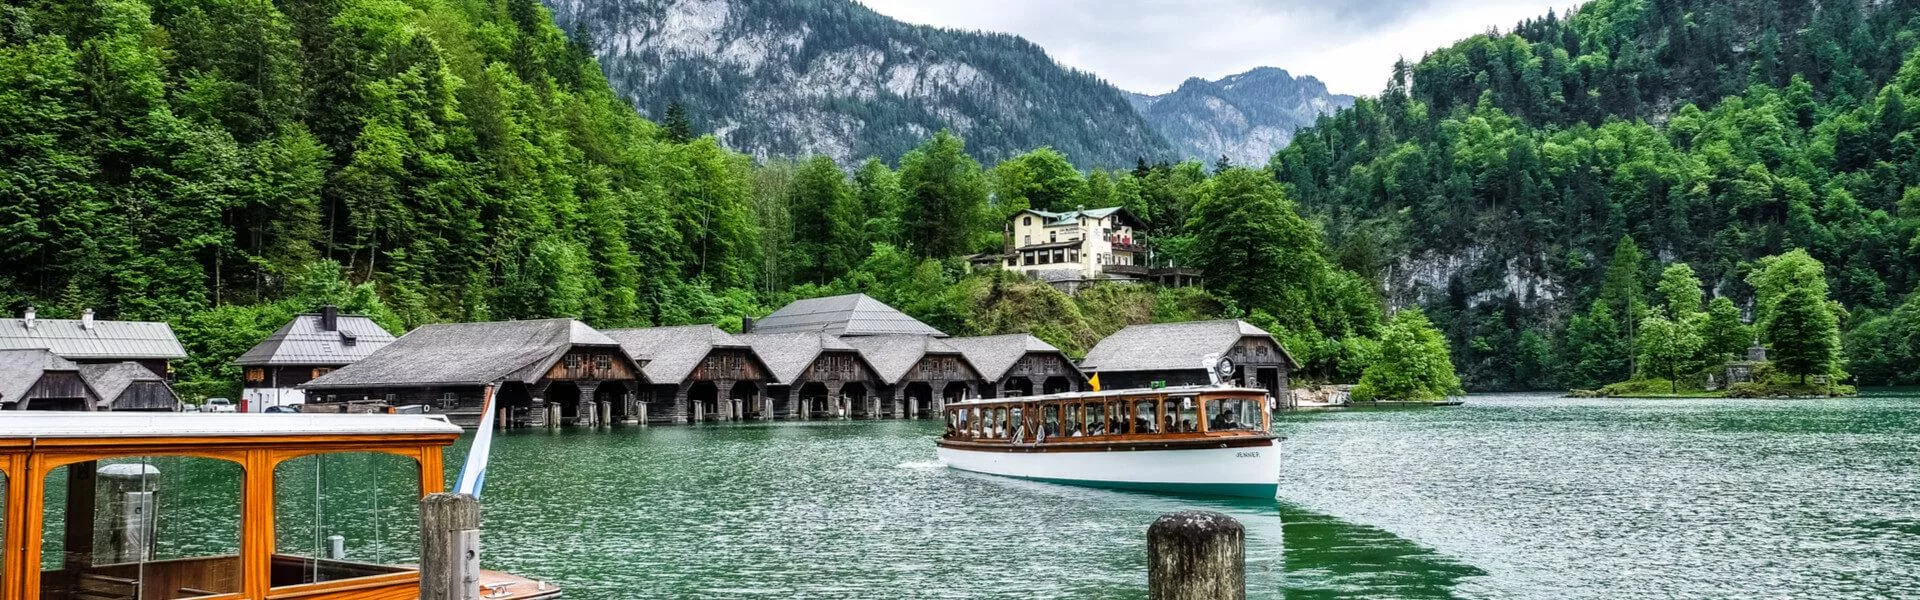 Vakantiehuizen Berchtesgaden